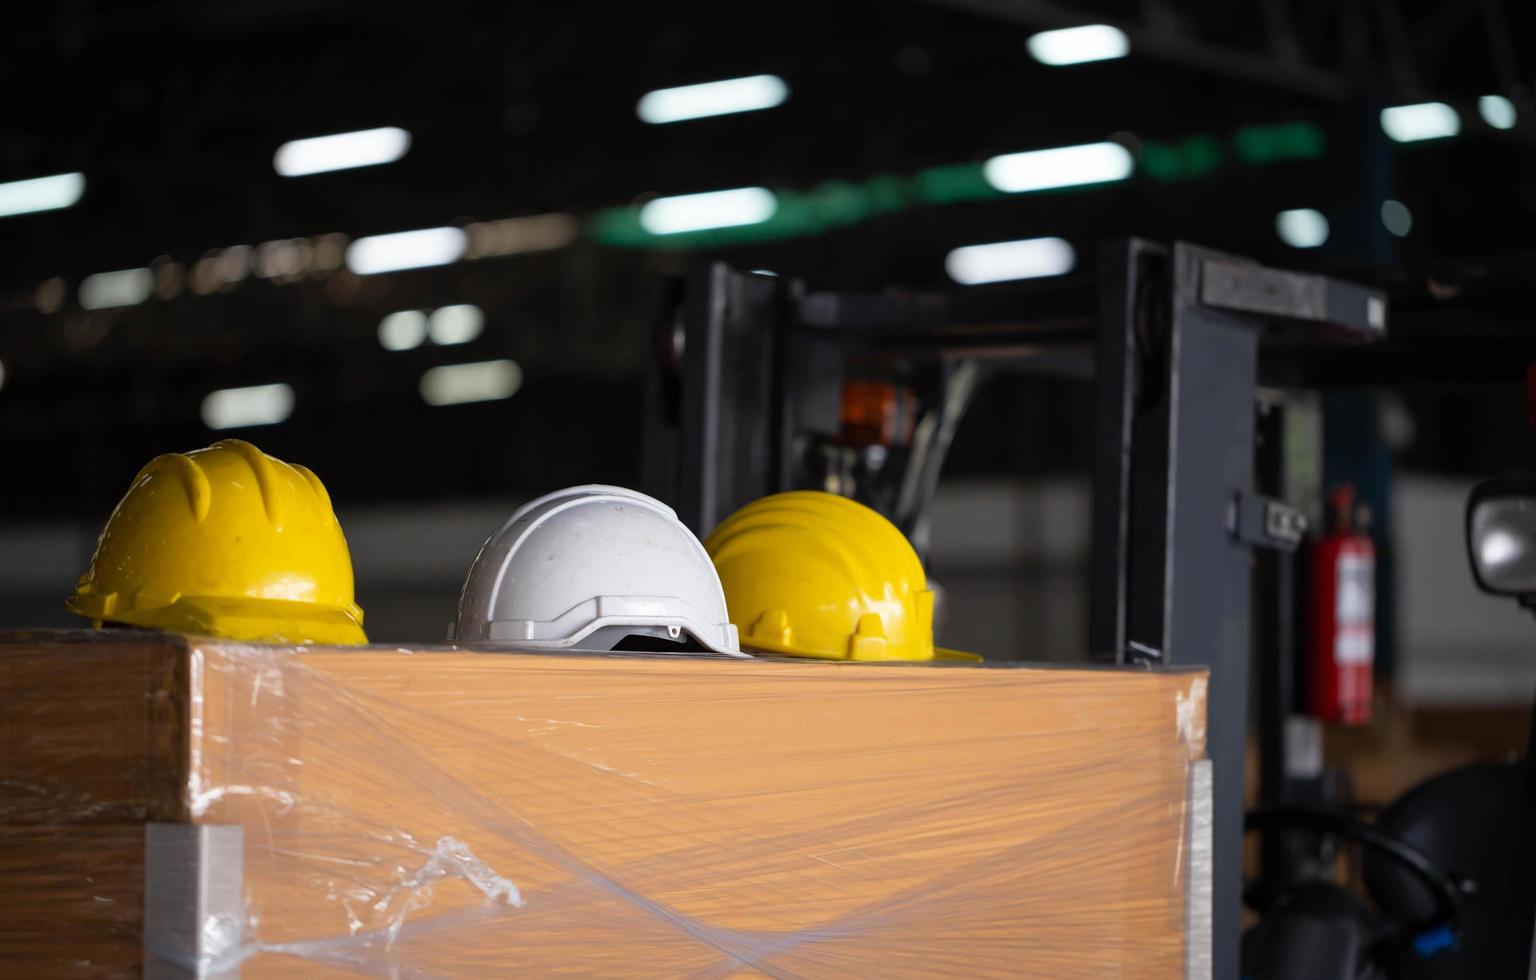 groupe de casque de sécurité sur la boîte dans le stockage de l'entrepôt de l'usine, chapeau de casque d'usure de sécurité dur sur la boîte en bois photo